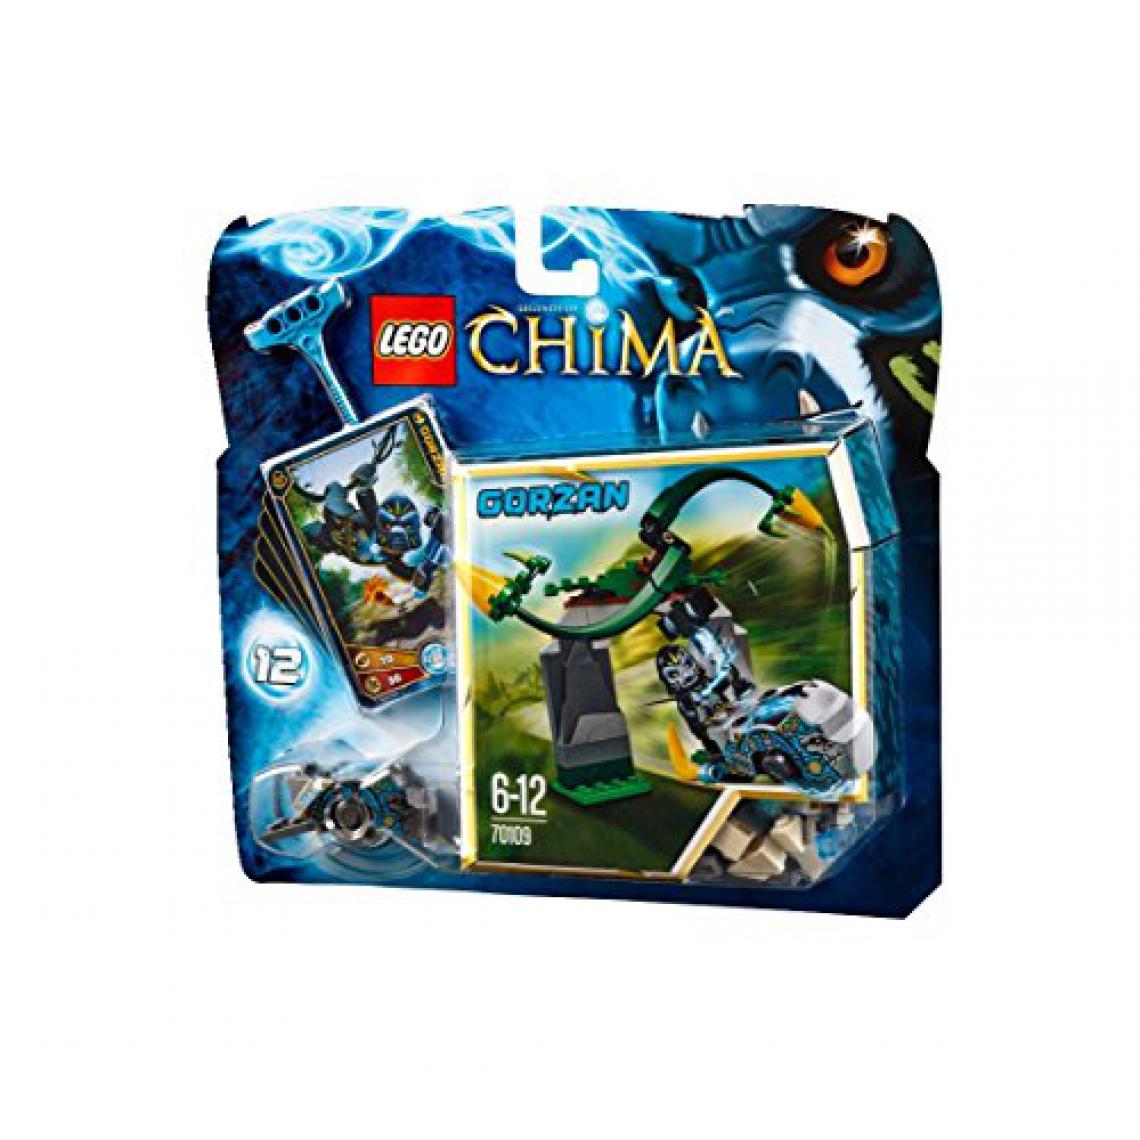 Lego - Légendes de chima - Vignes tourbillonnantes - 70109 - Briques et blocs